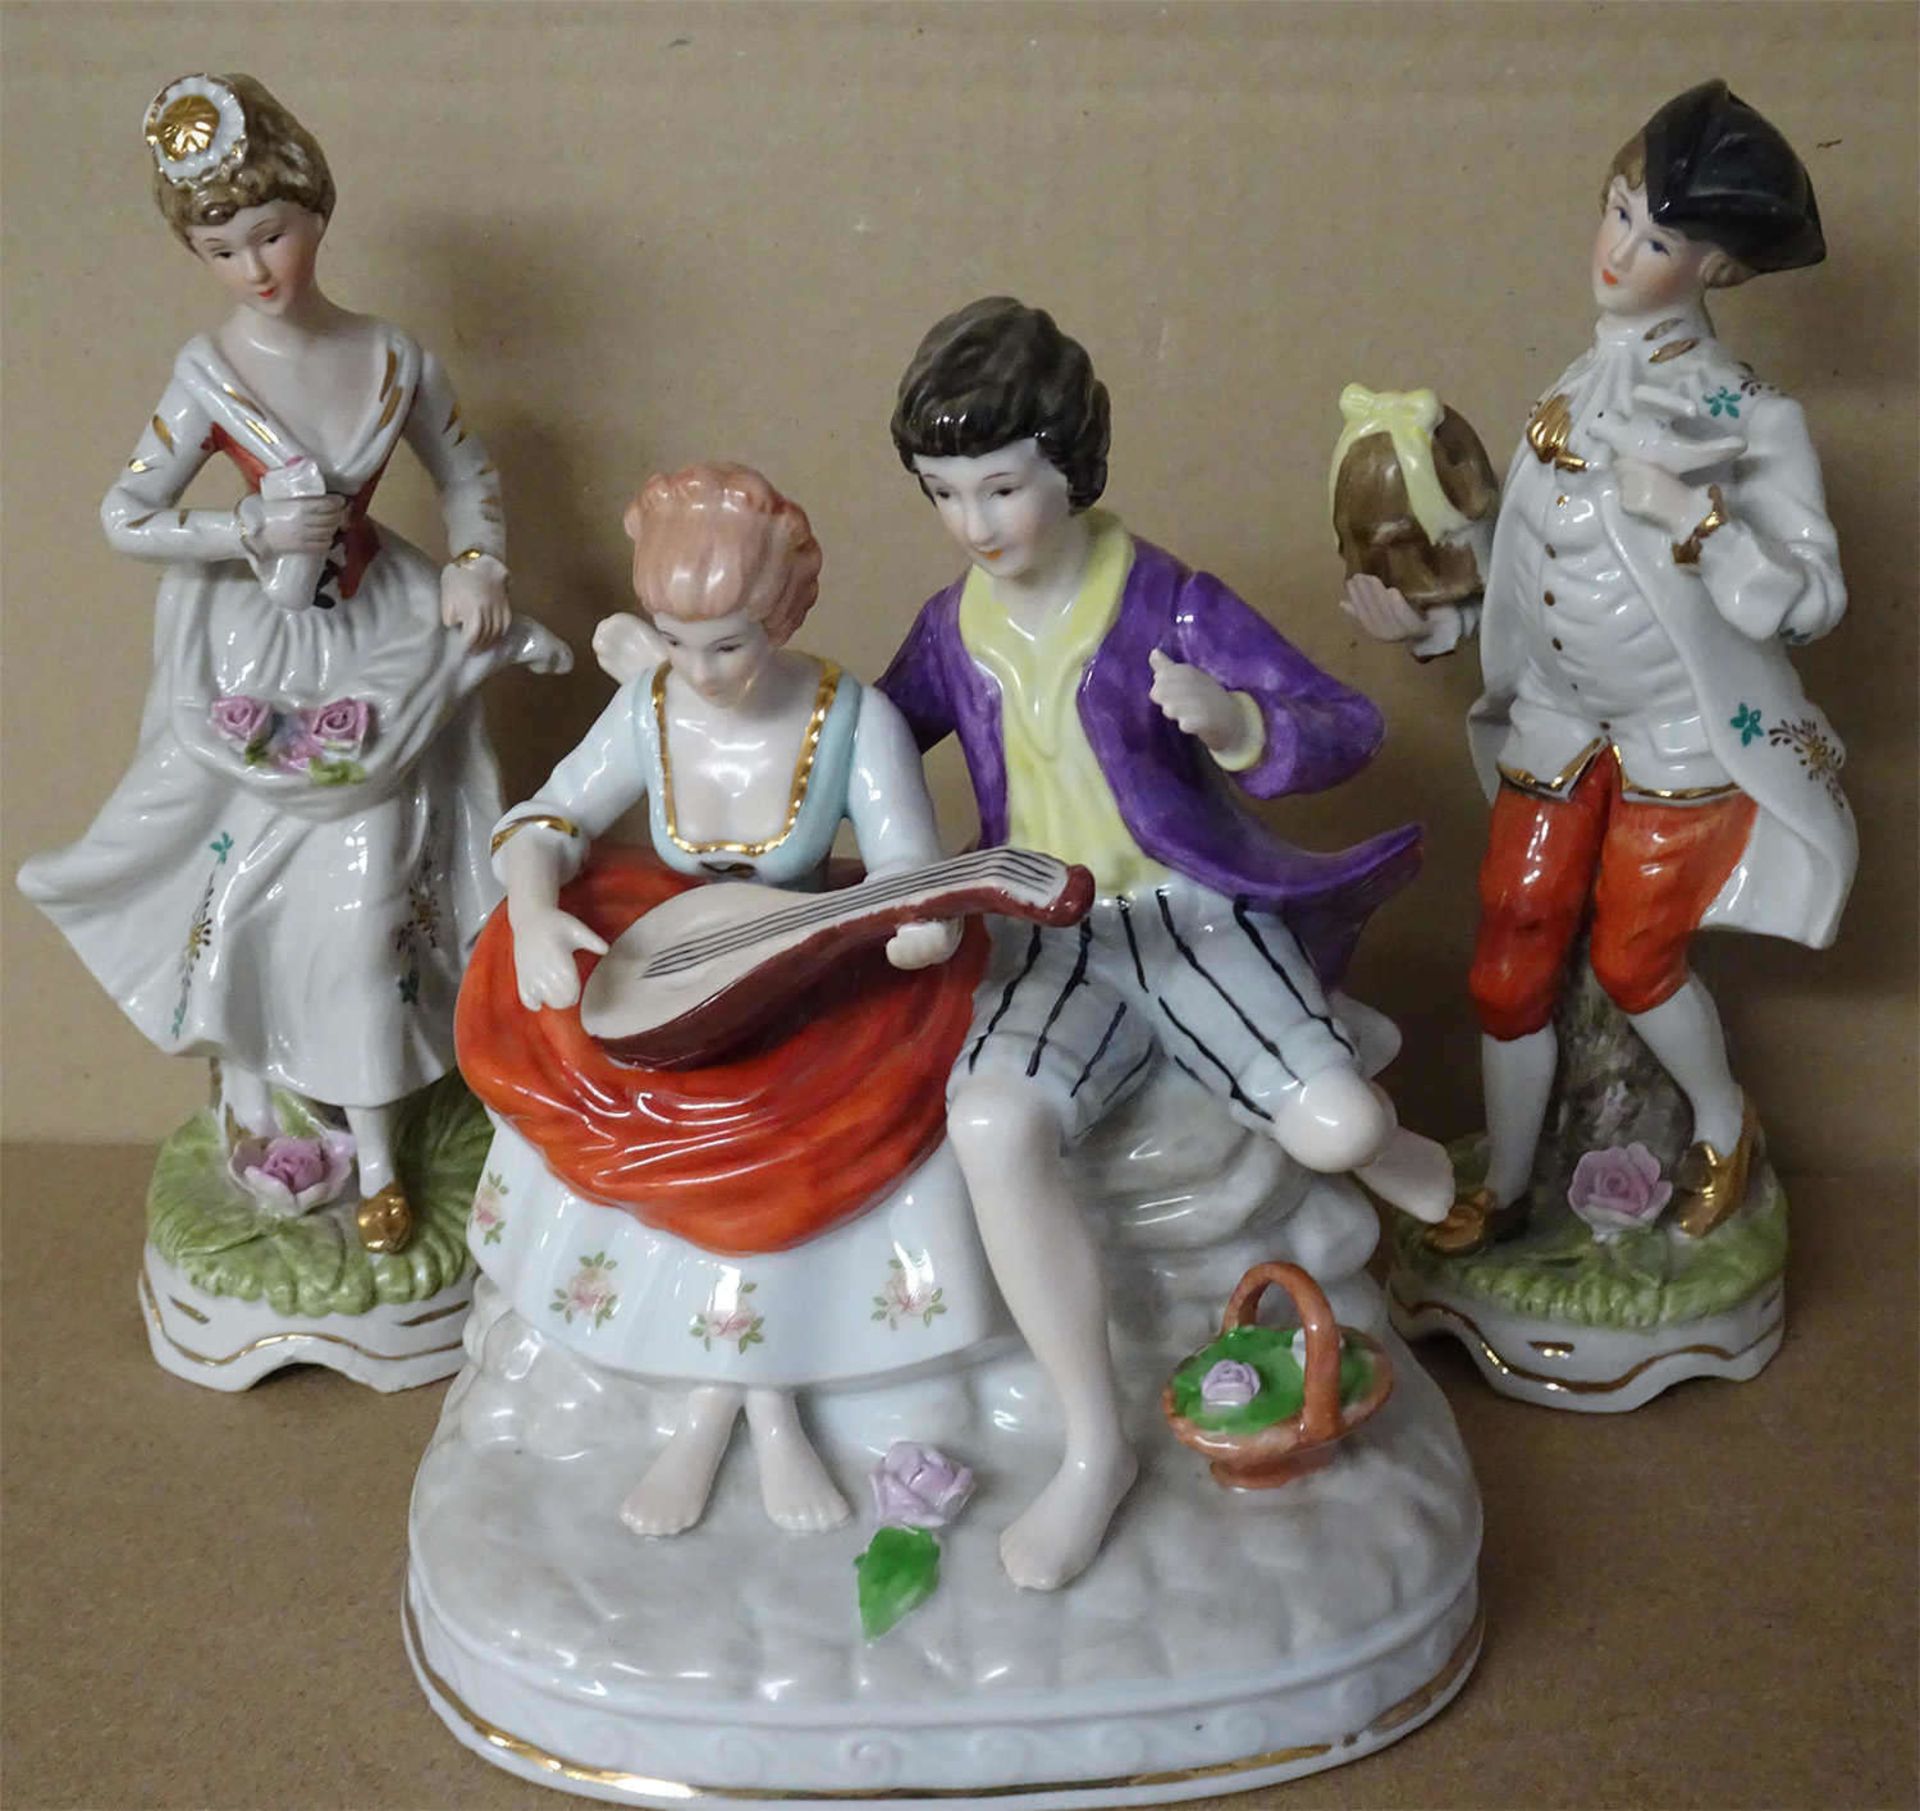 3 Porzellan - Figuren, farbig ausstaffiert Rokkoko -Stil, 1x gemarkt. Guter Zustand.3 porcelain